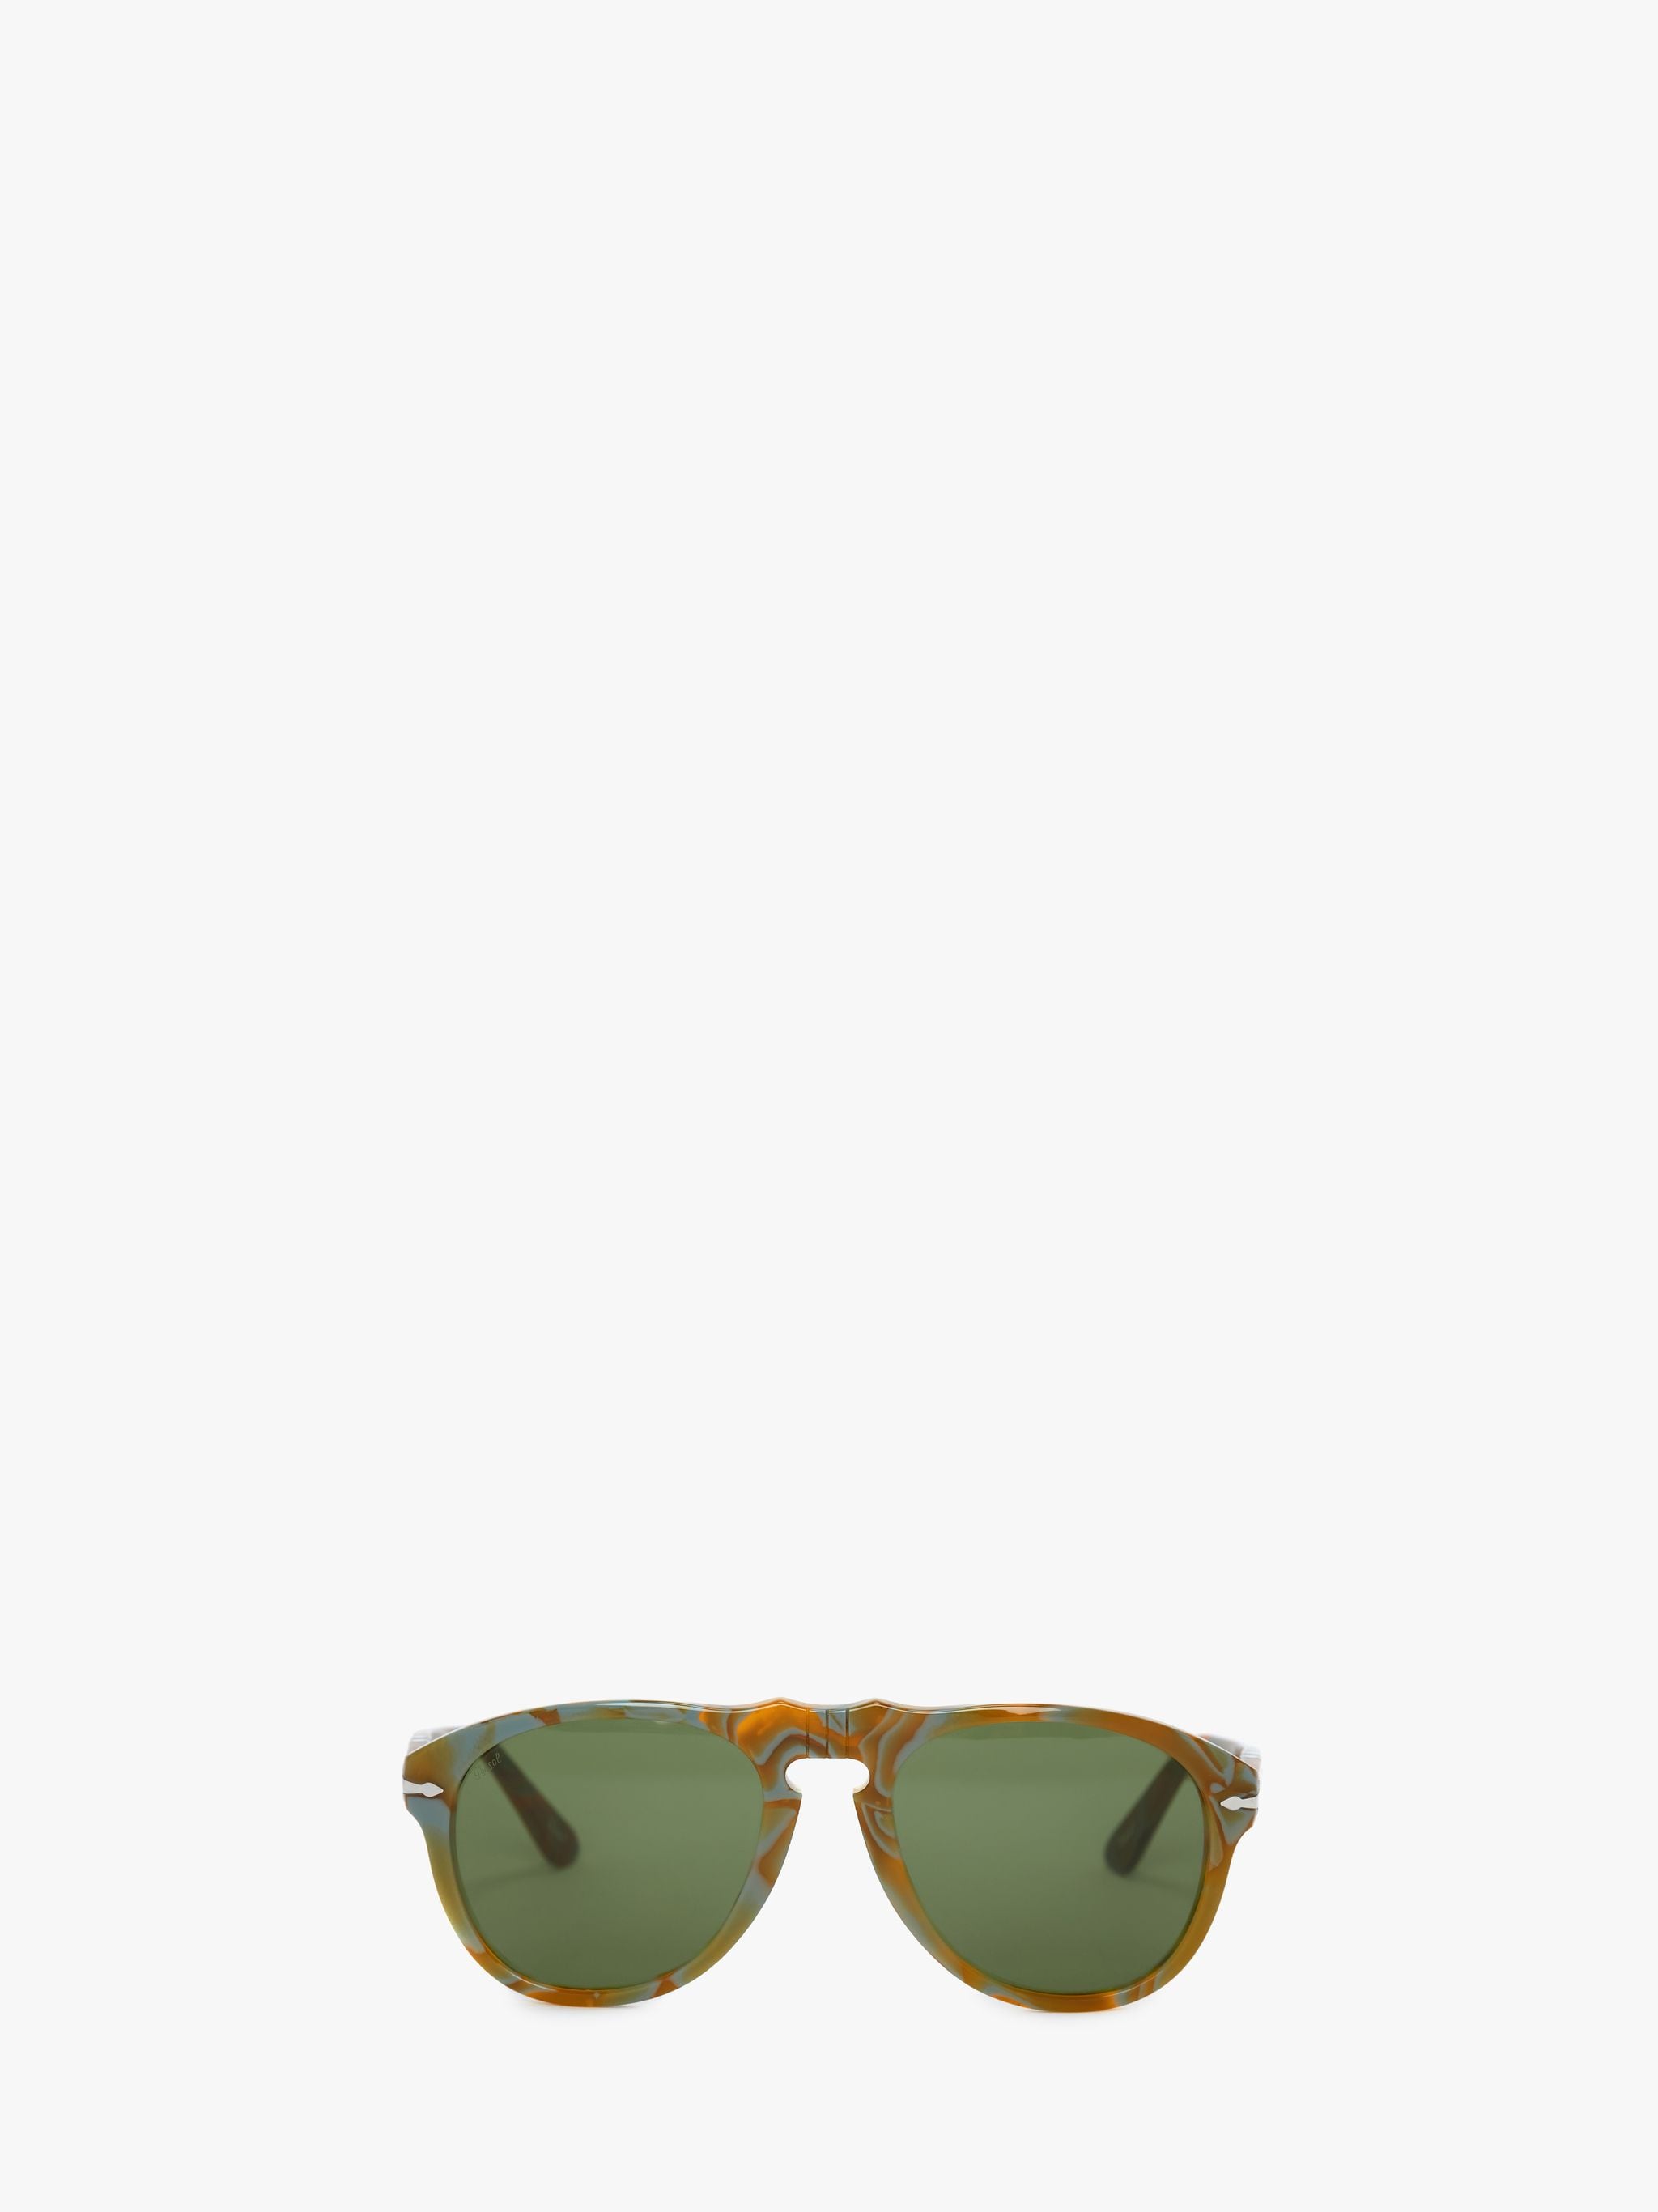 Солнцезащитные очки - авиатор JW Anderson, зеленый солнцезащитные очки fedrov авиаторы оправа металл поляризационные черный